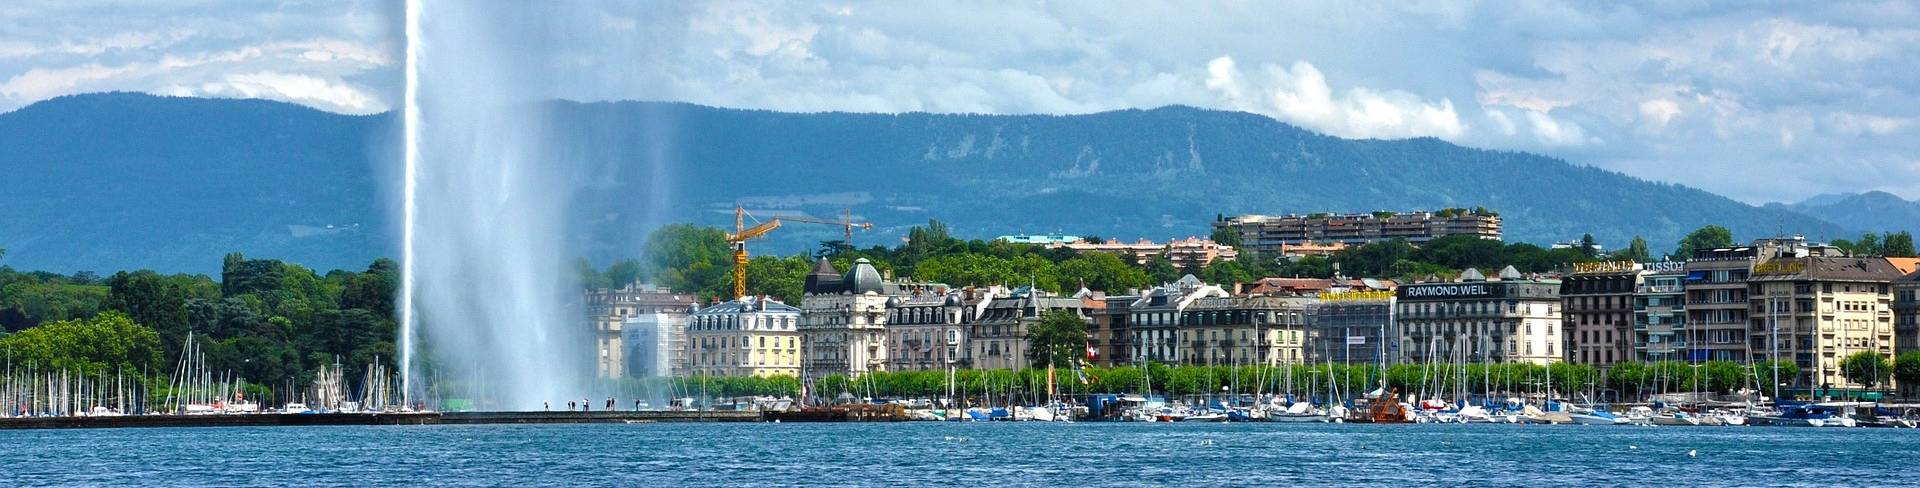 Женева - город на берегу Женевского озера